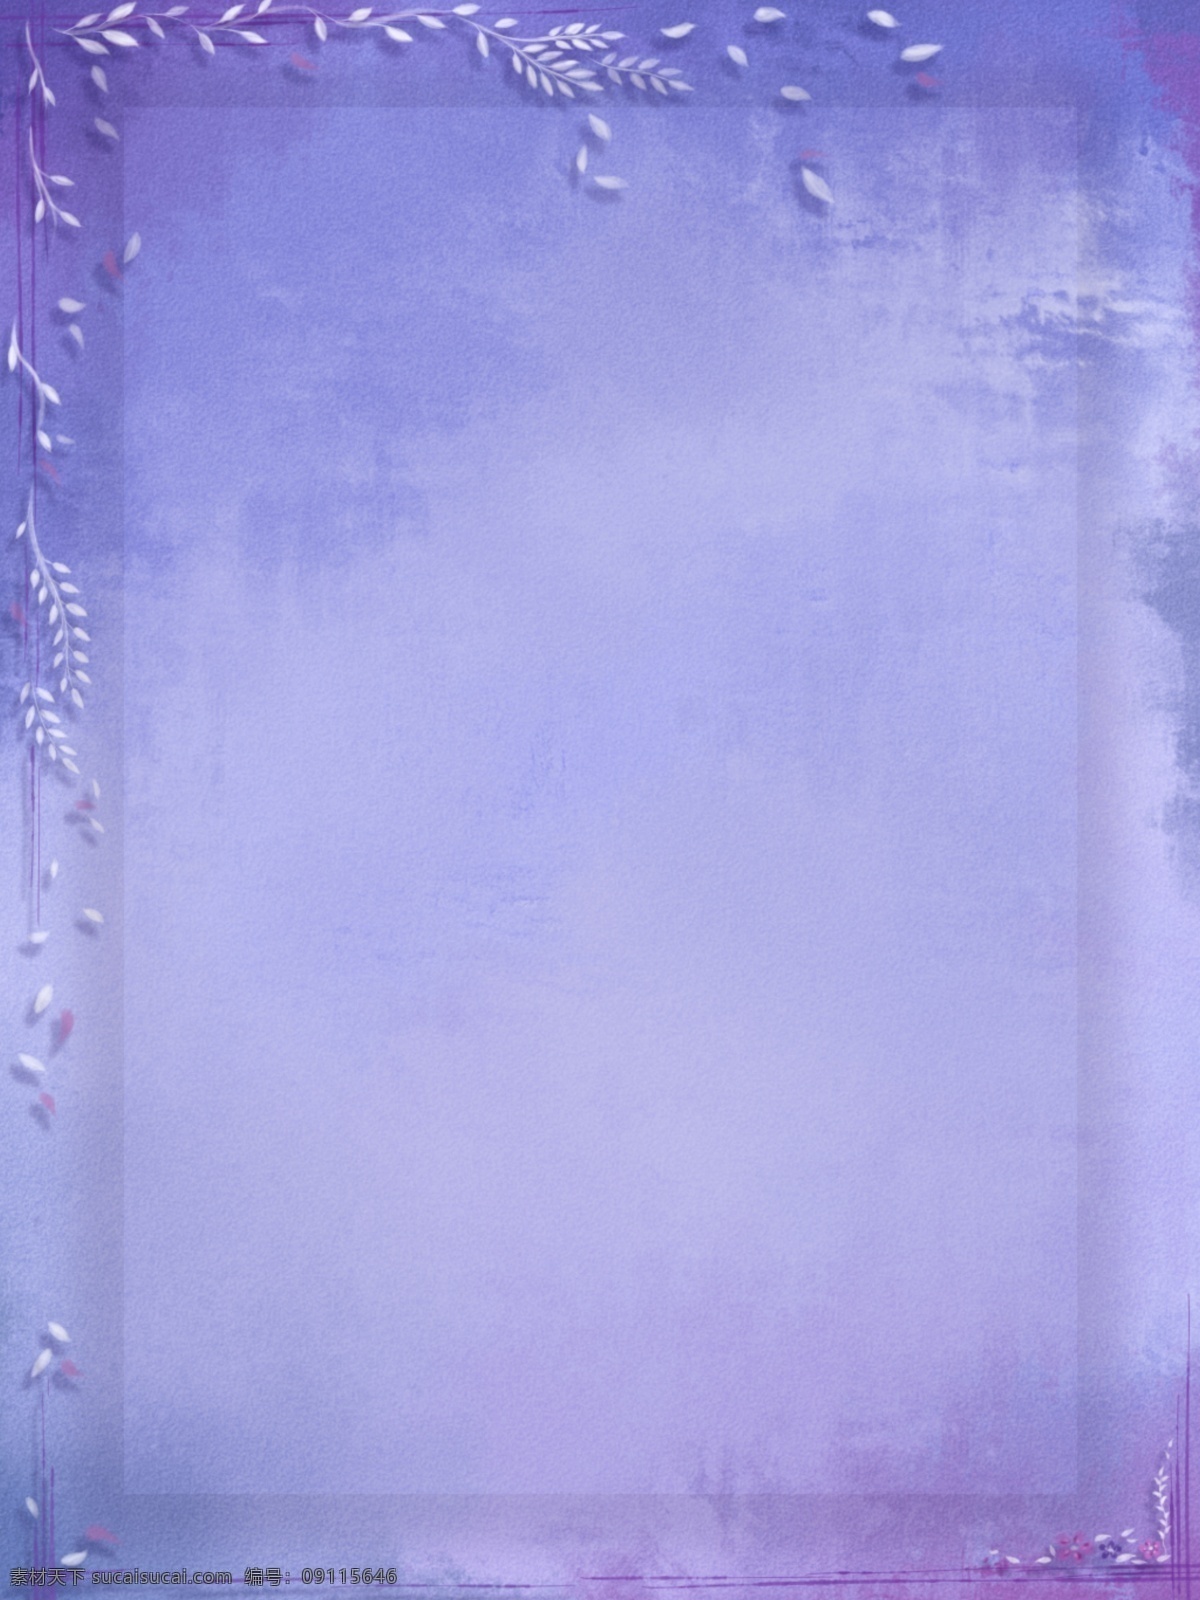 纯 手绘 原创 渐变 水彩 质感 淡雅 边框 背景 蓝色 紫色 叶子 小清新 纯手绘 蓝紫色 复古 手绘风 落叶 植物花卉 厚彩 边框背景